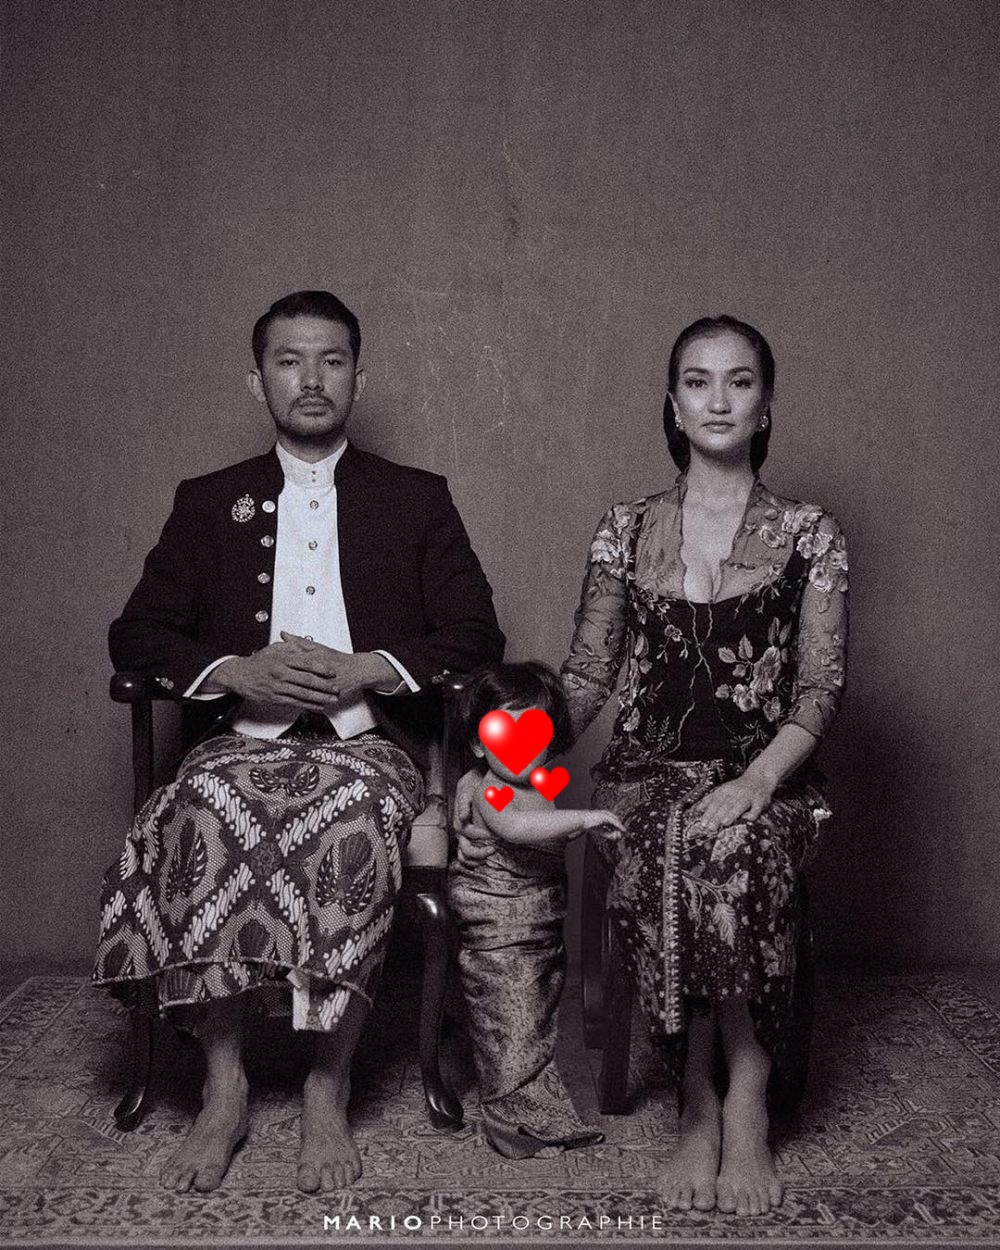 Pemotretan 8 keluarga seleb usung adat Jawa, klasik banget